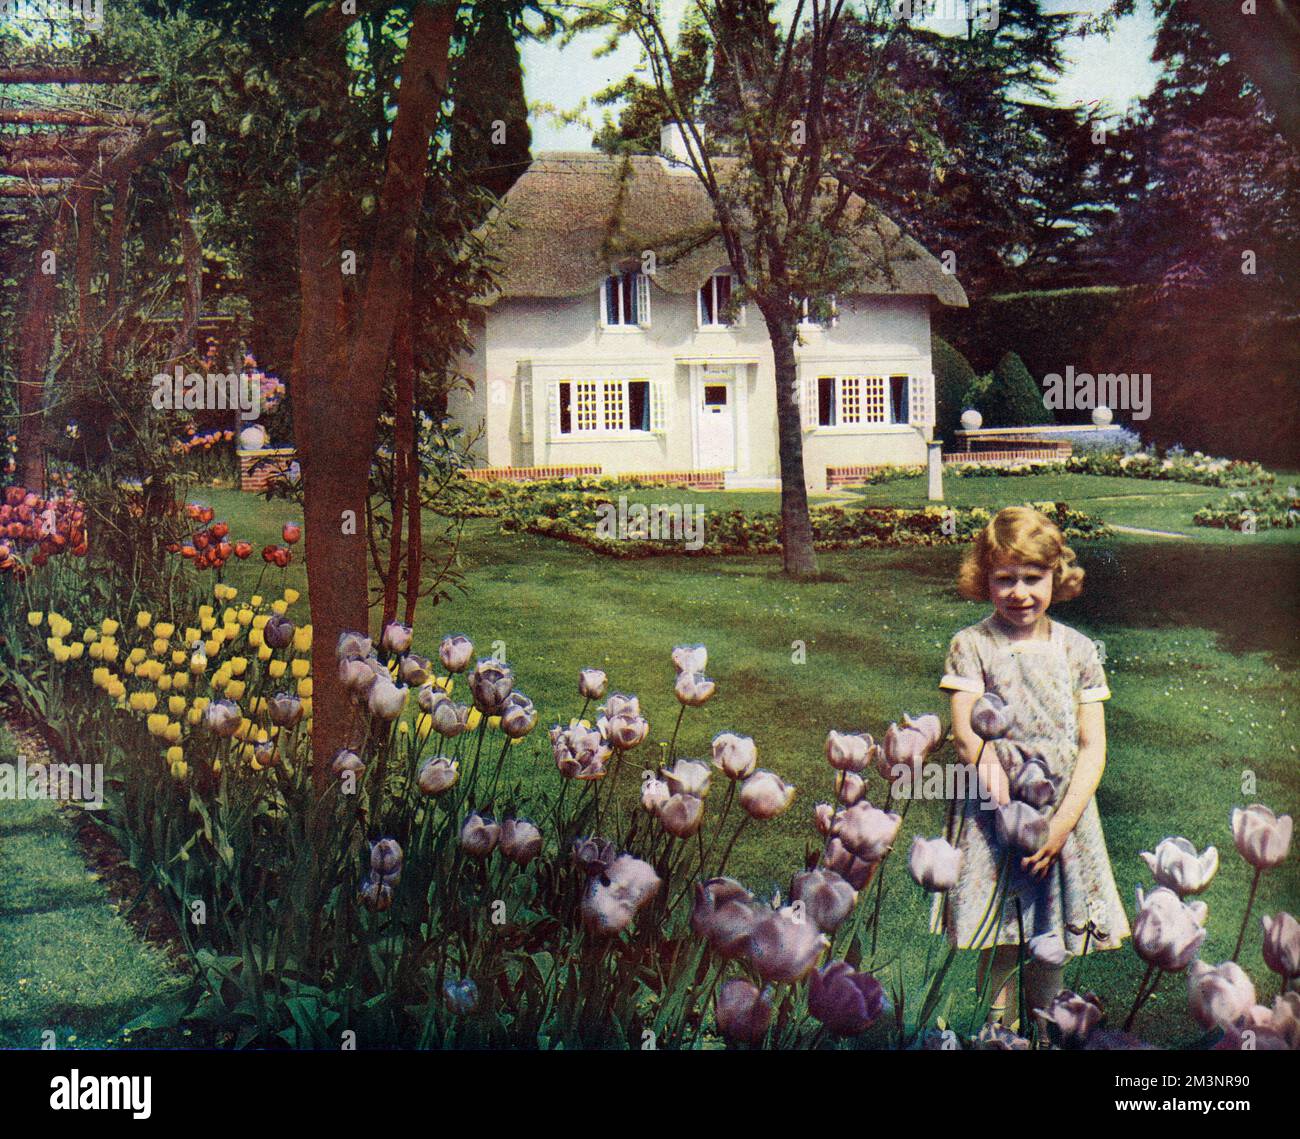 La principessa Elisabetta fuori dalla sua casa in miniatura al Royal Lodge, Windsor. La casa è stata un dono del popolo del Galles come un sesto compleanno per la principessa Elisabetta (successivamente regina Elisabetta II) Data: 1933 Foto Stock